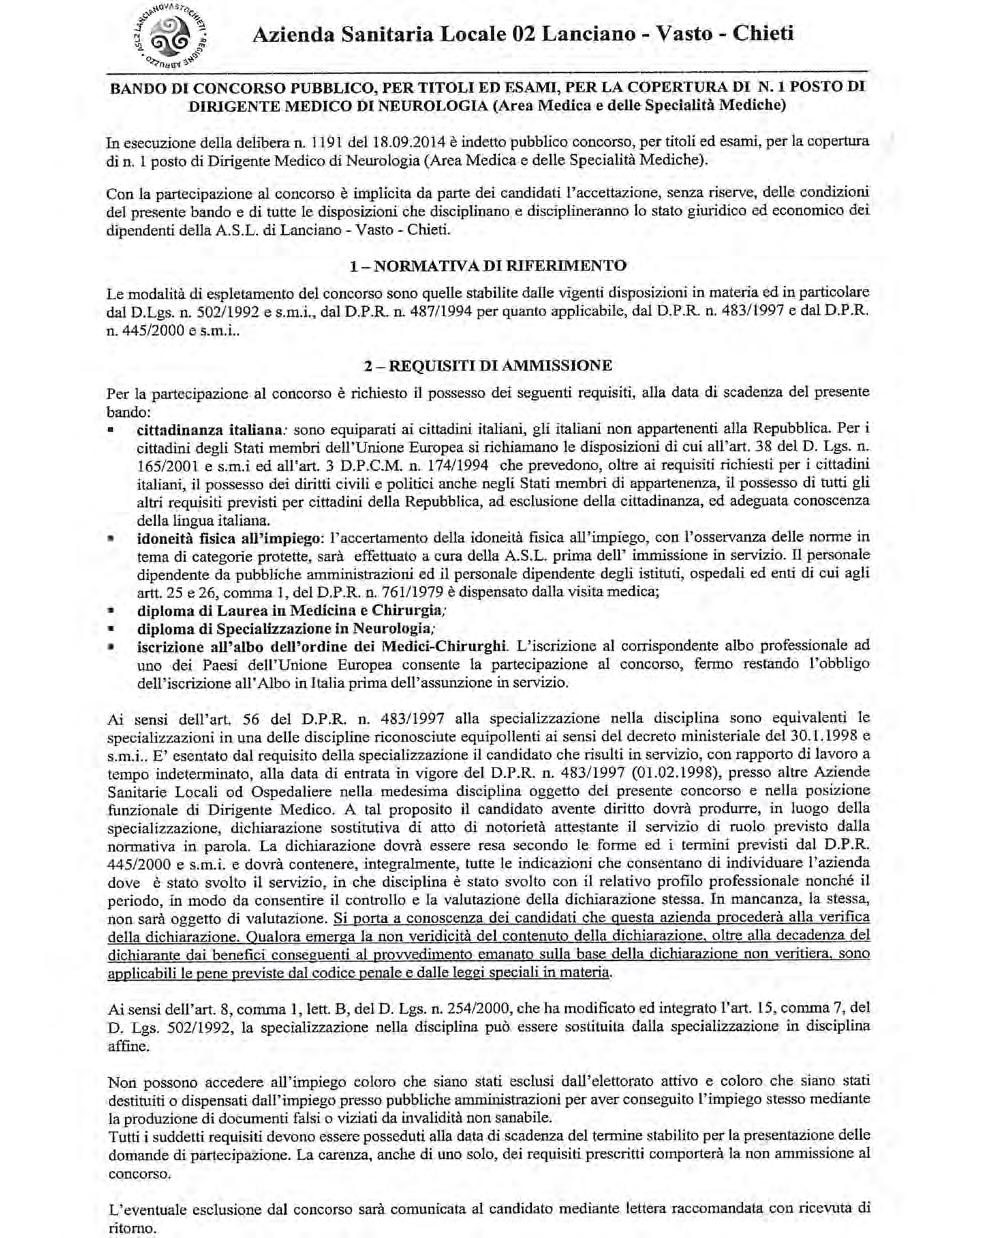 Pag. 202 Bollettino Ufficiale della Regione Abruzzo Anno XLIV - N. 130 Speciale (21.11.